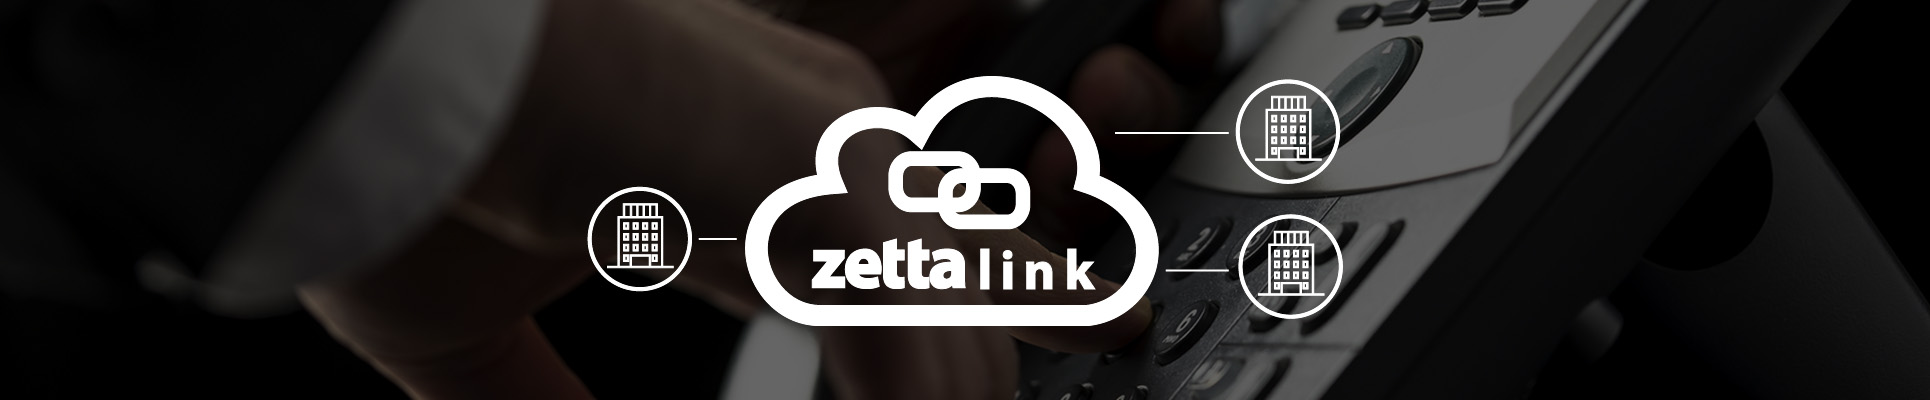 Zetta Link